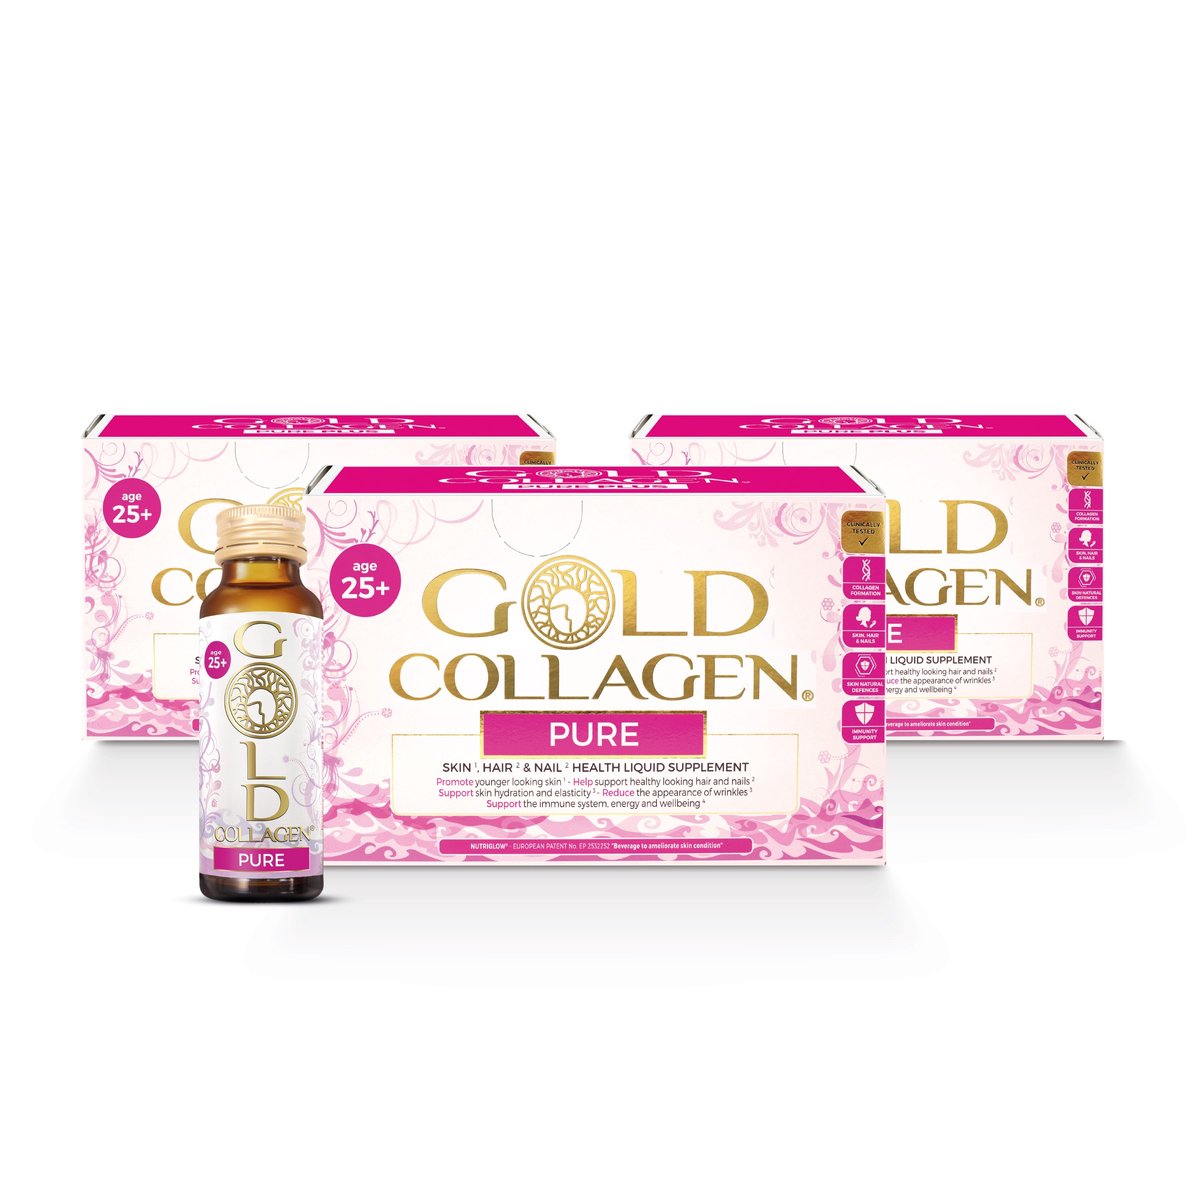 Gold Collagen Pure (maandkuur : 3 dozen 10 x 50ml) + Onze bestseller sinds 2011 nu met Exclusief Summer gift Kikoy Strandlaken/Beach Towel